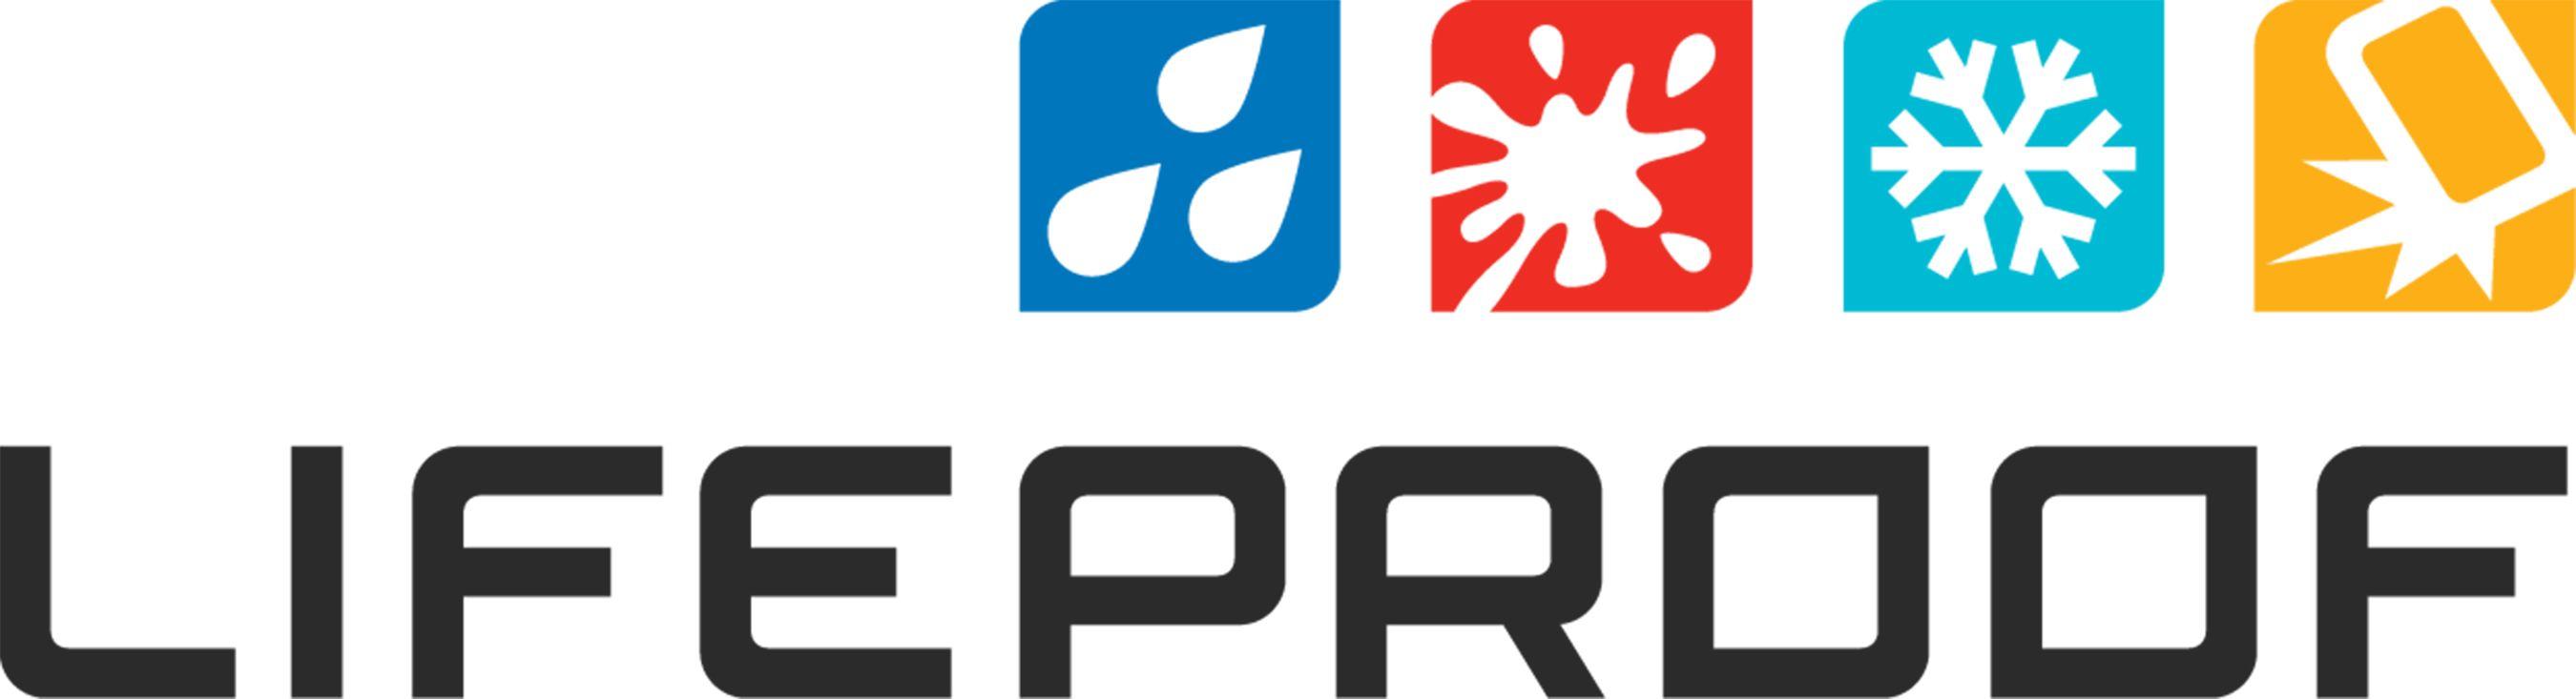 LifeProof Logo - Lifeproof Logos